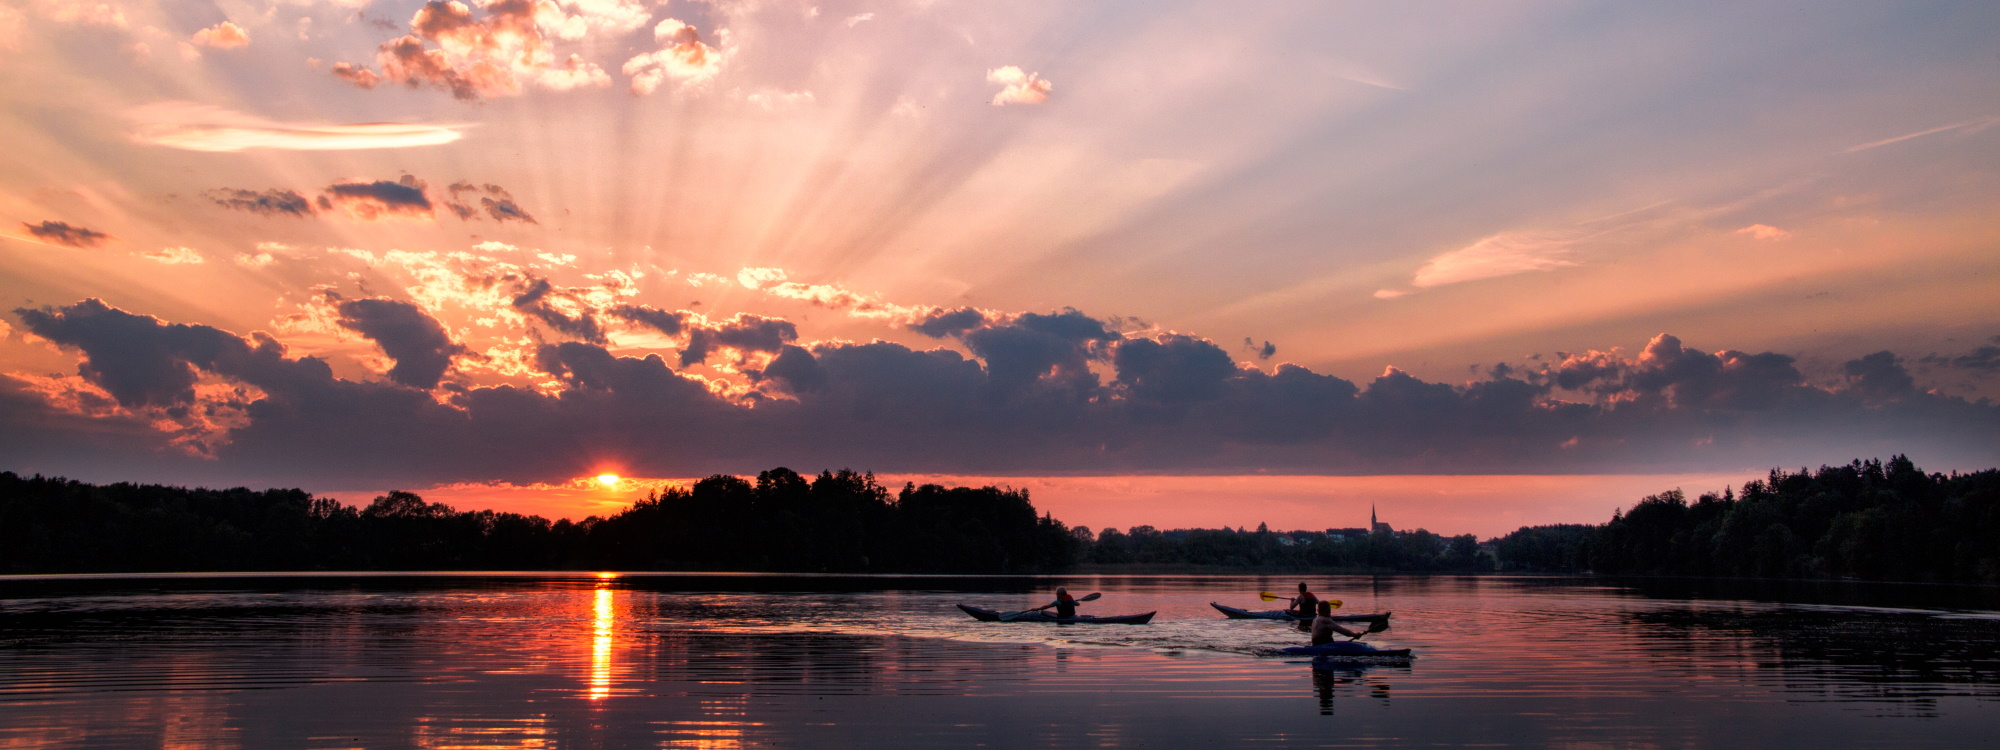 Abtsdorfer See im Sonnenuntergang mit Booten - © Manfred Fiedler